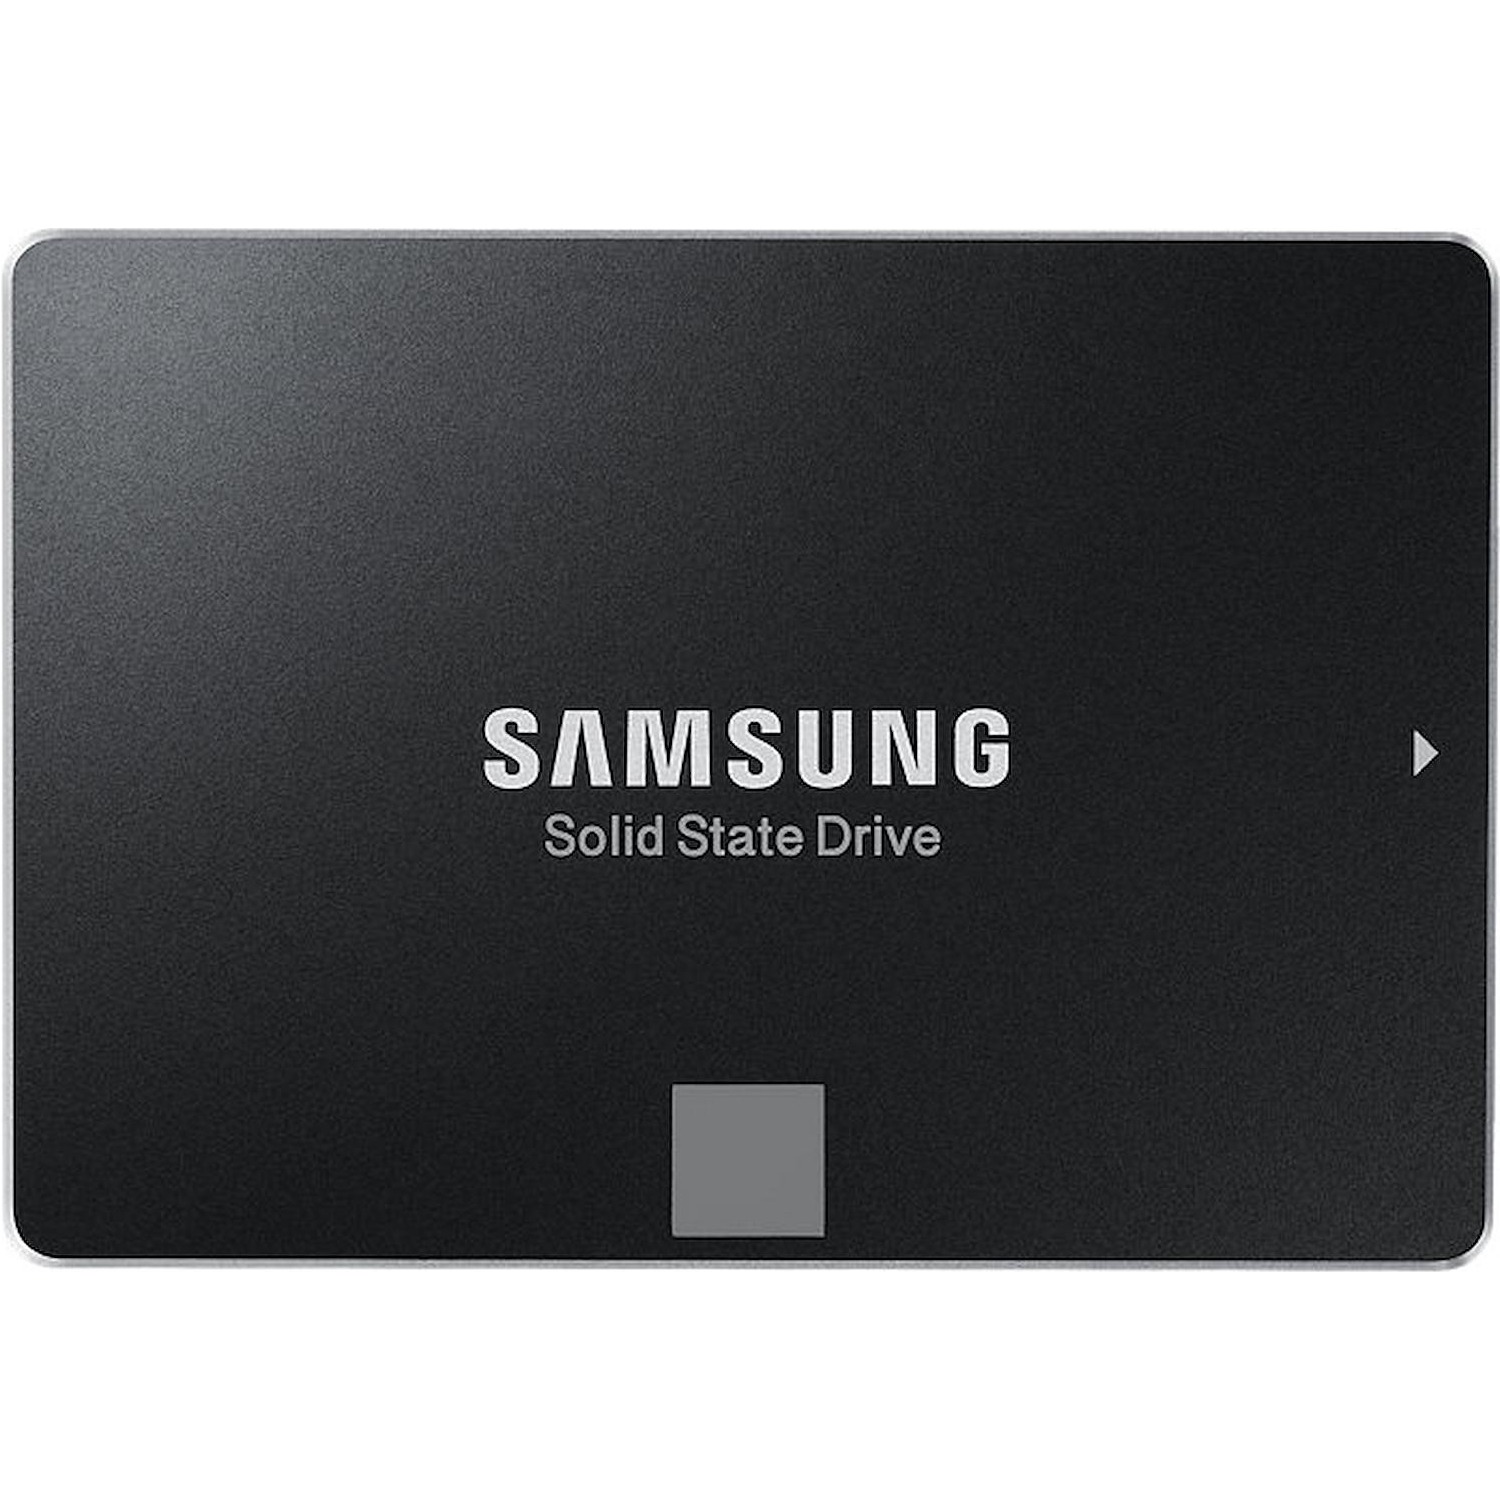 Immagine per HD SSD Samsung 250GB interno Sata 3 da DIMOStore